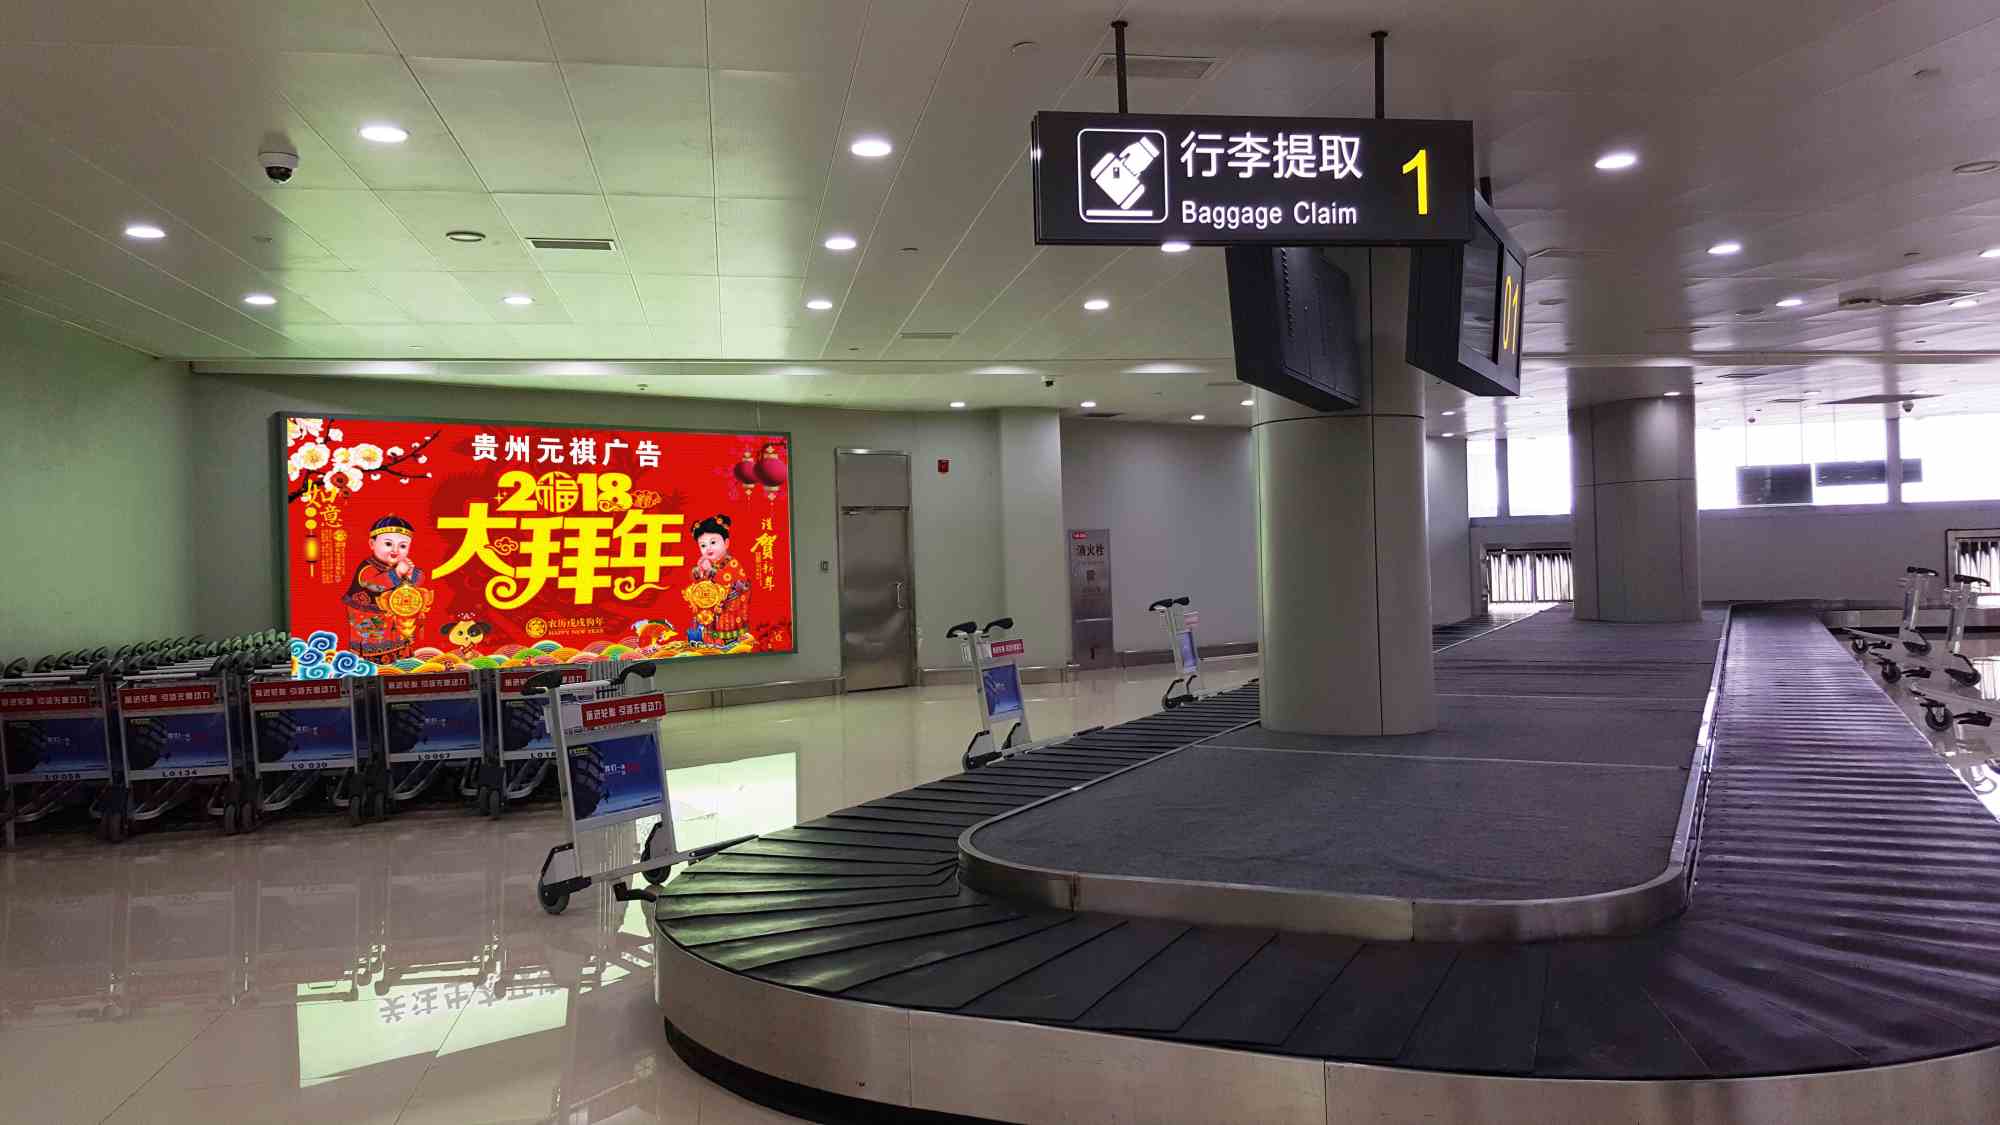 贵阳机场t1航站楼到达厅行李提取处灯箱广告